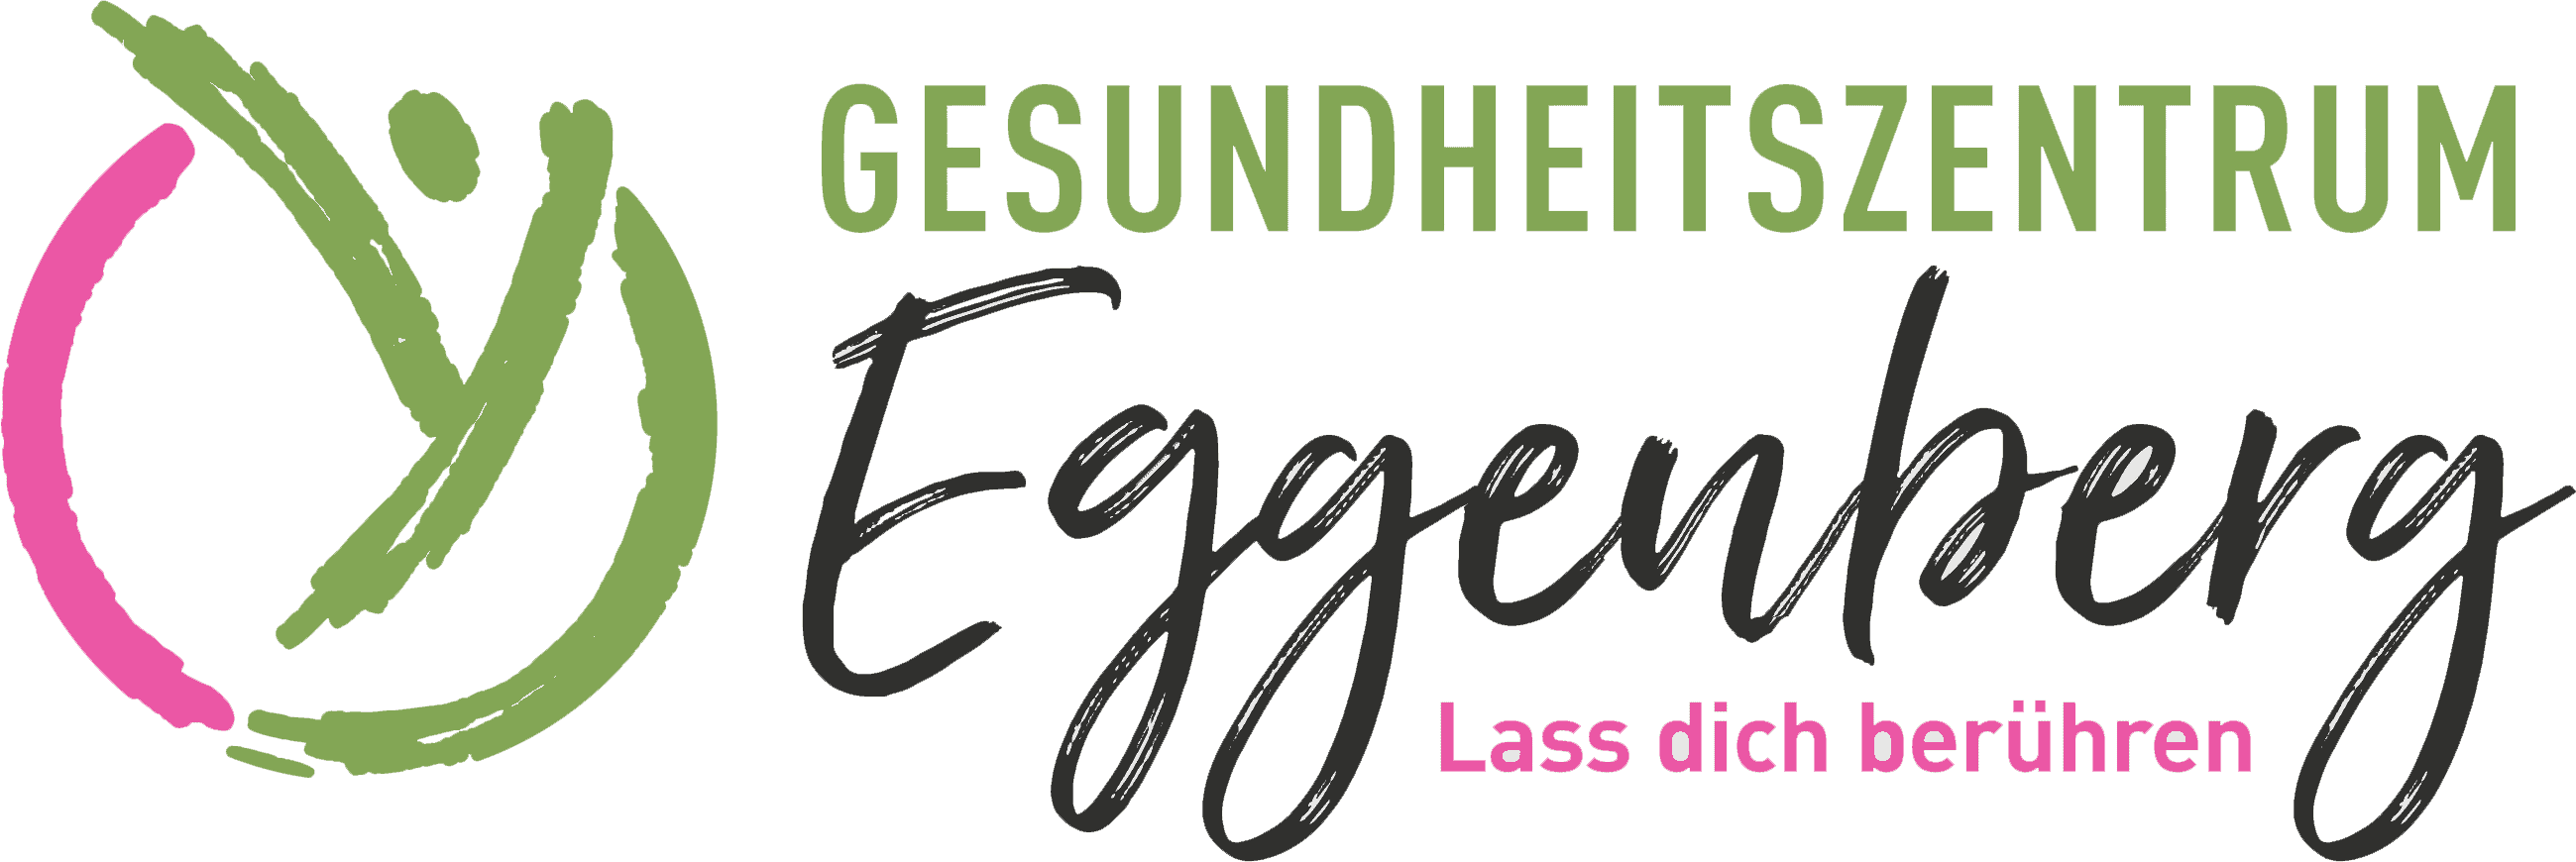 gesundheitszentrum eggenberg logo h 1